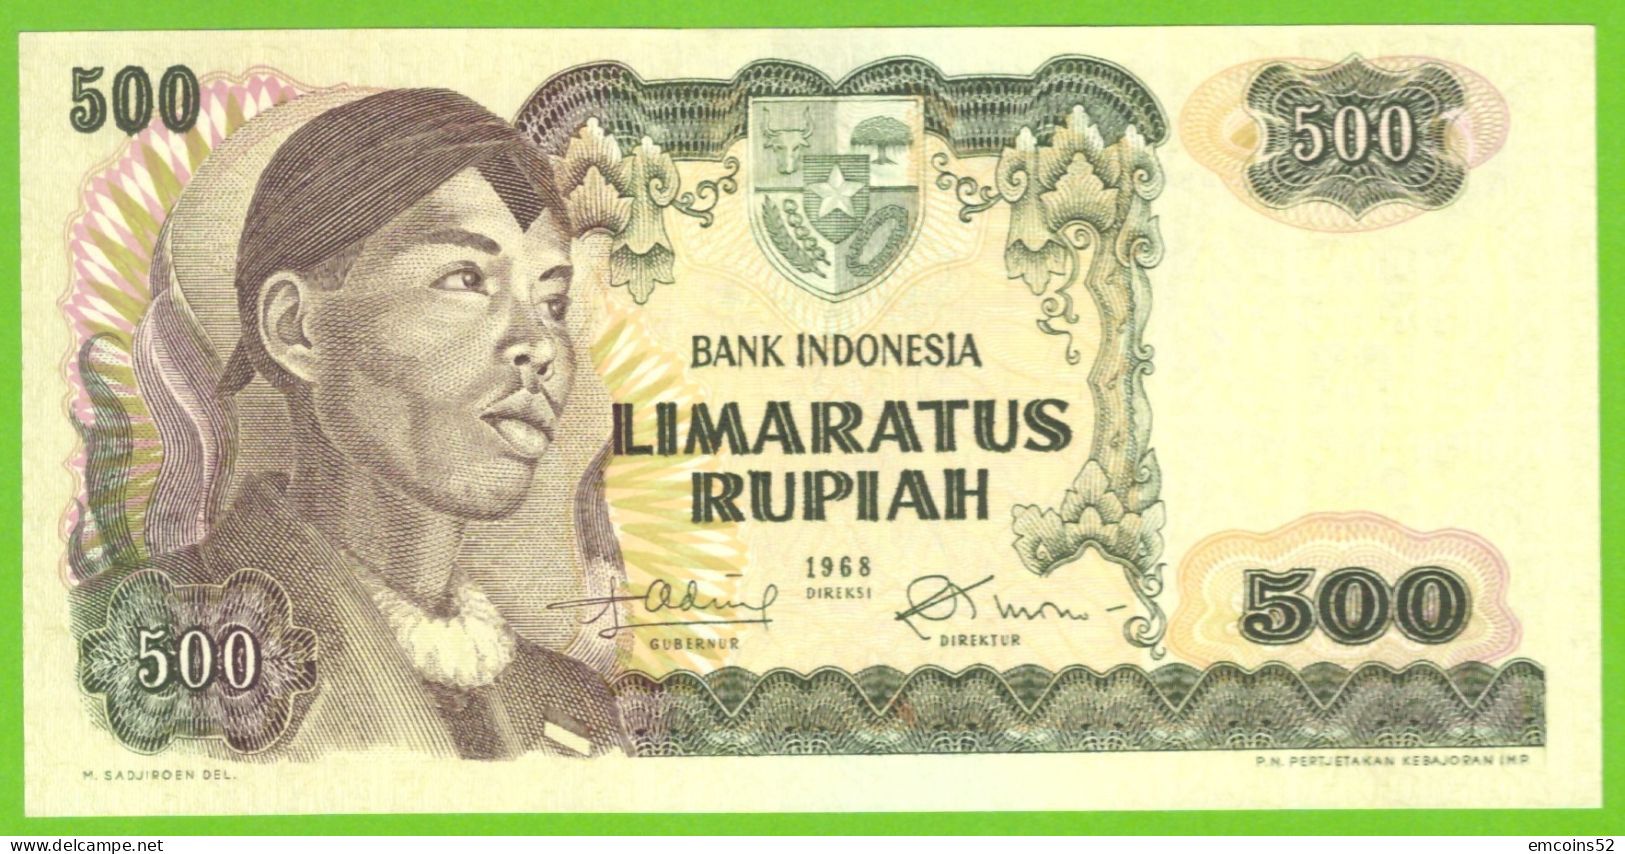 INDONESIA 500 RUPIAH 1968  P-109  UNC - Indonesia